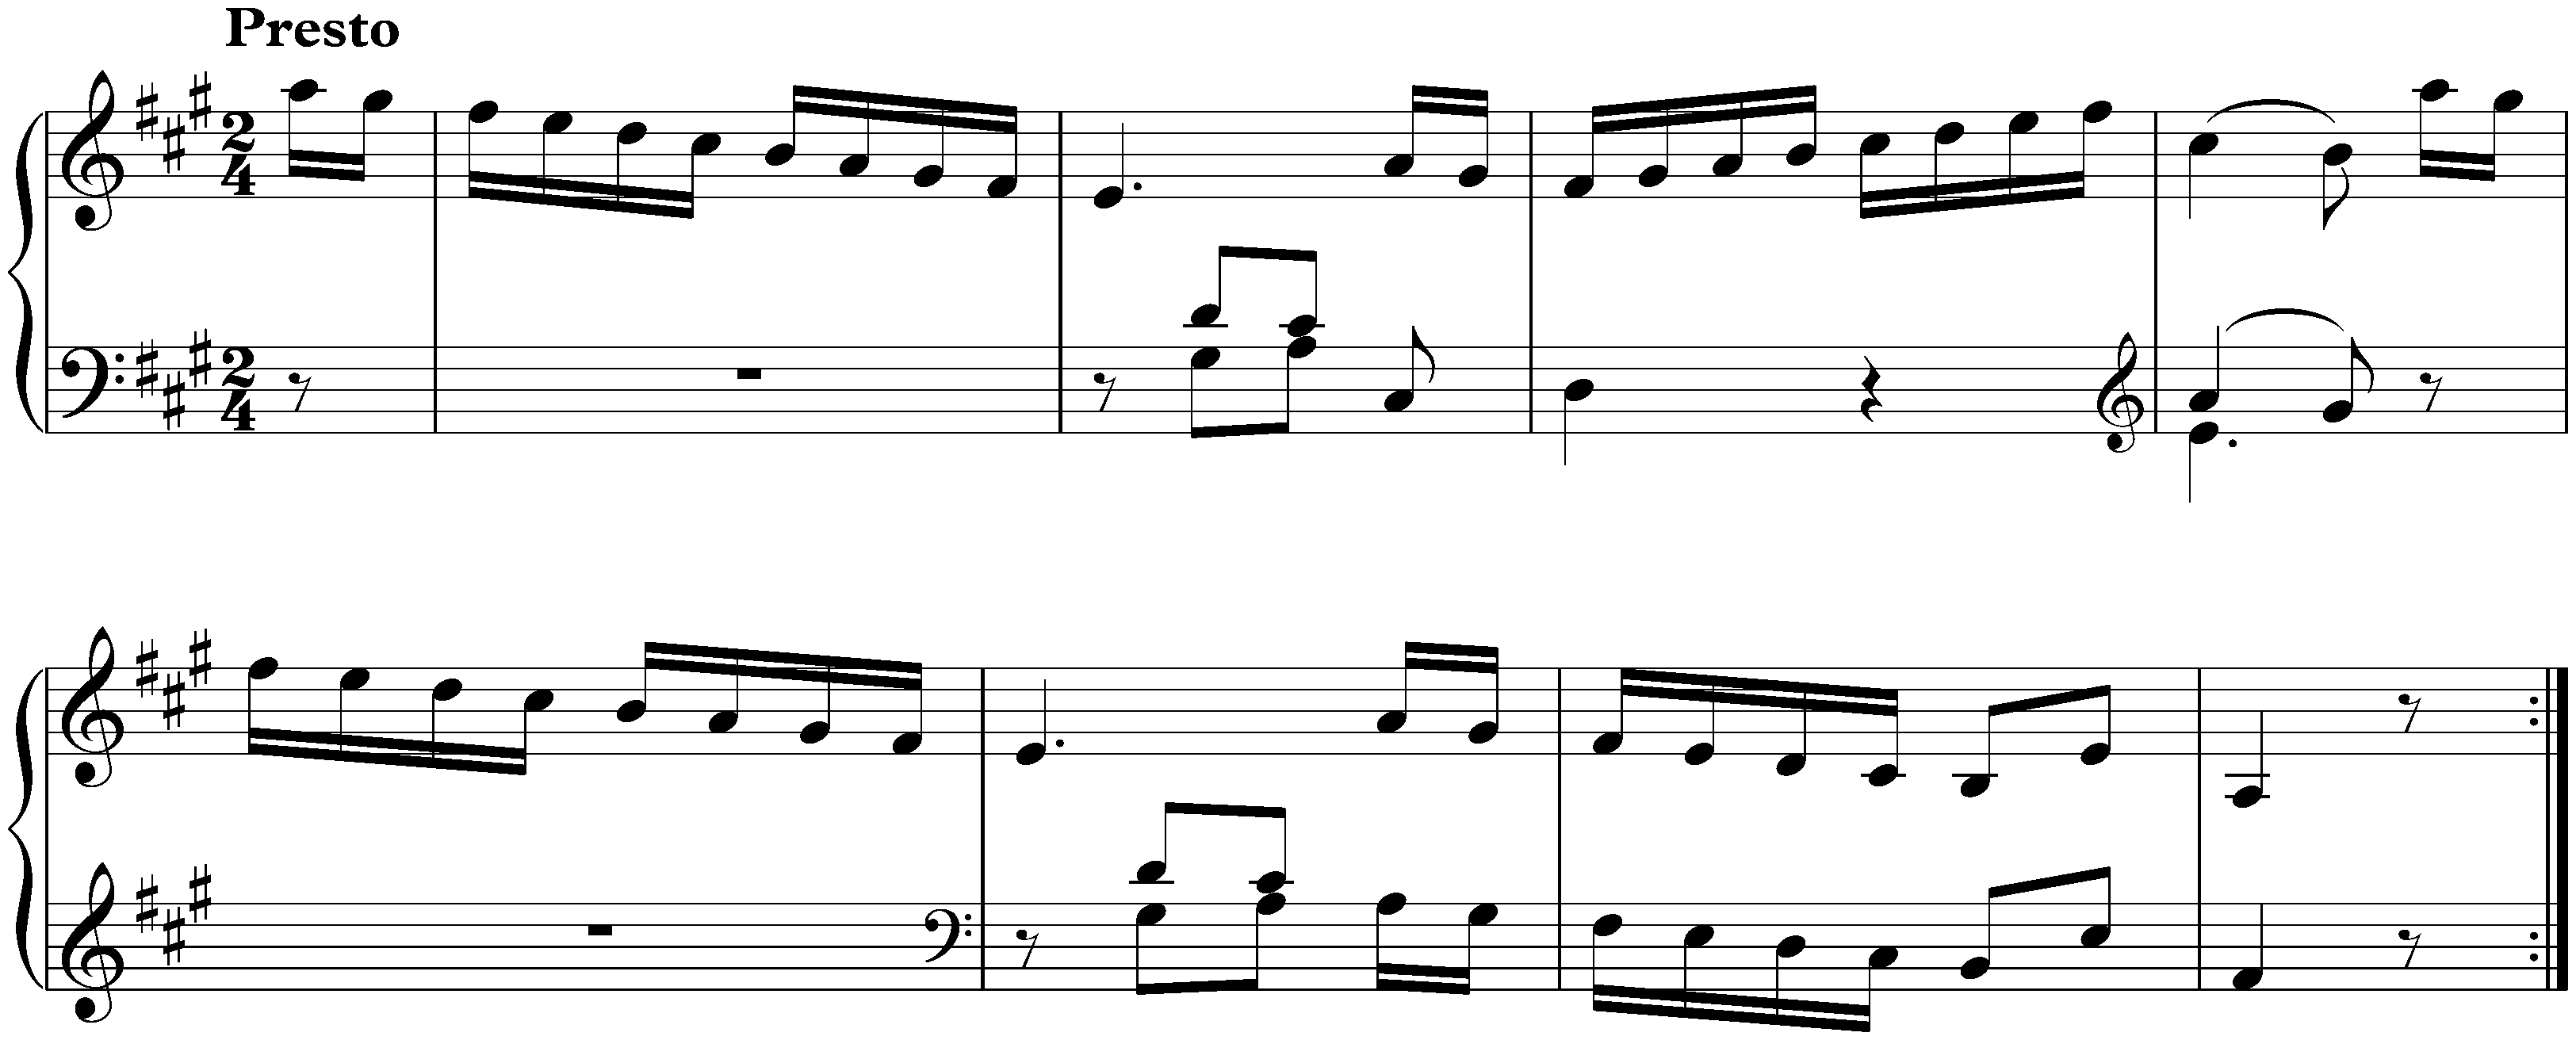 Sonata in A major, Hob. XVI:26; 3. Finale: Presto